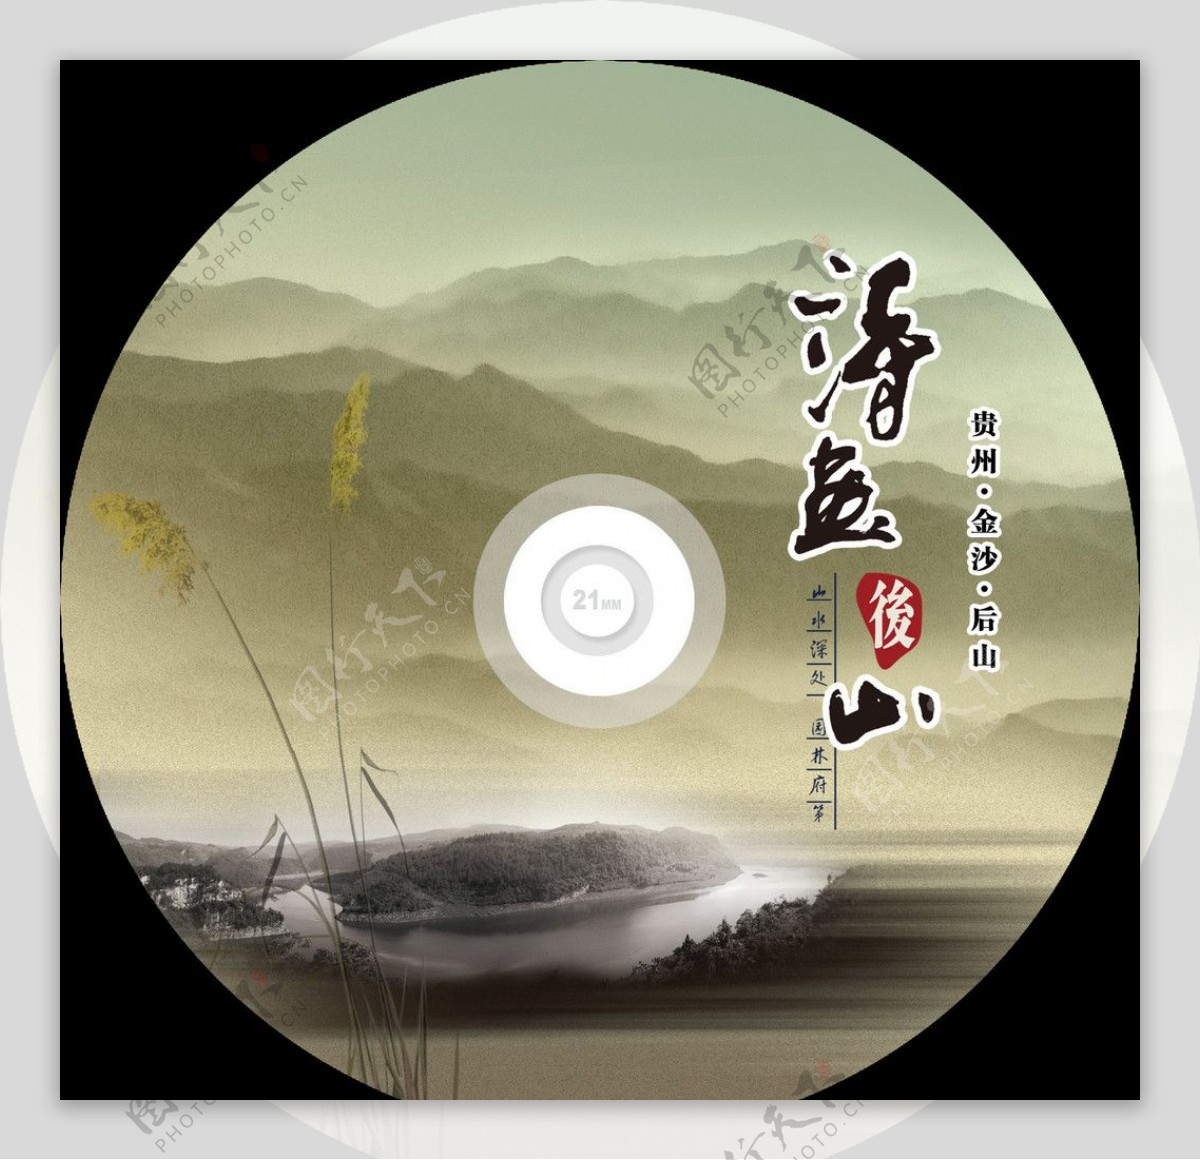 诗画后山宣传CD封面设计图片